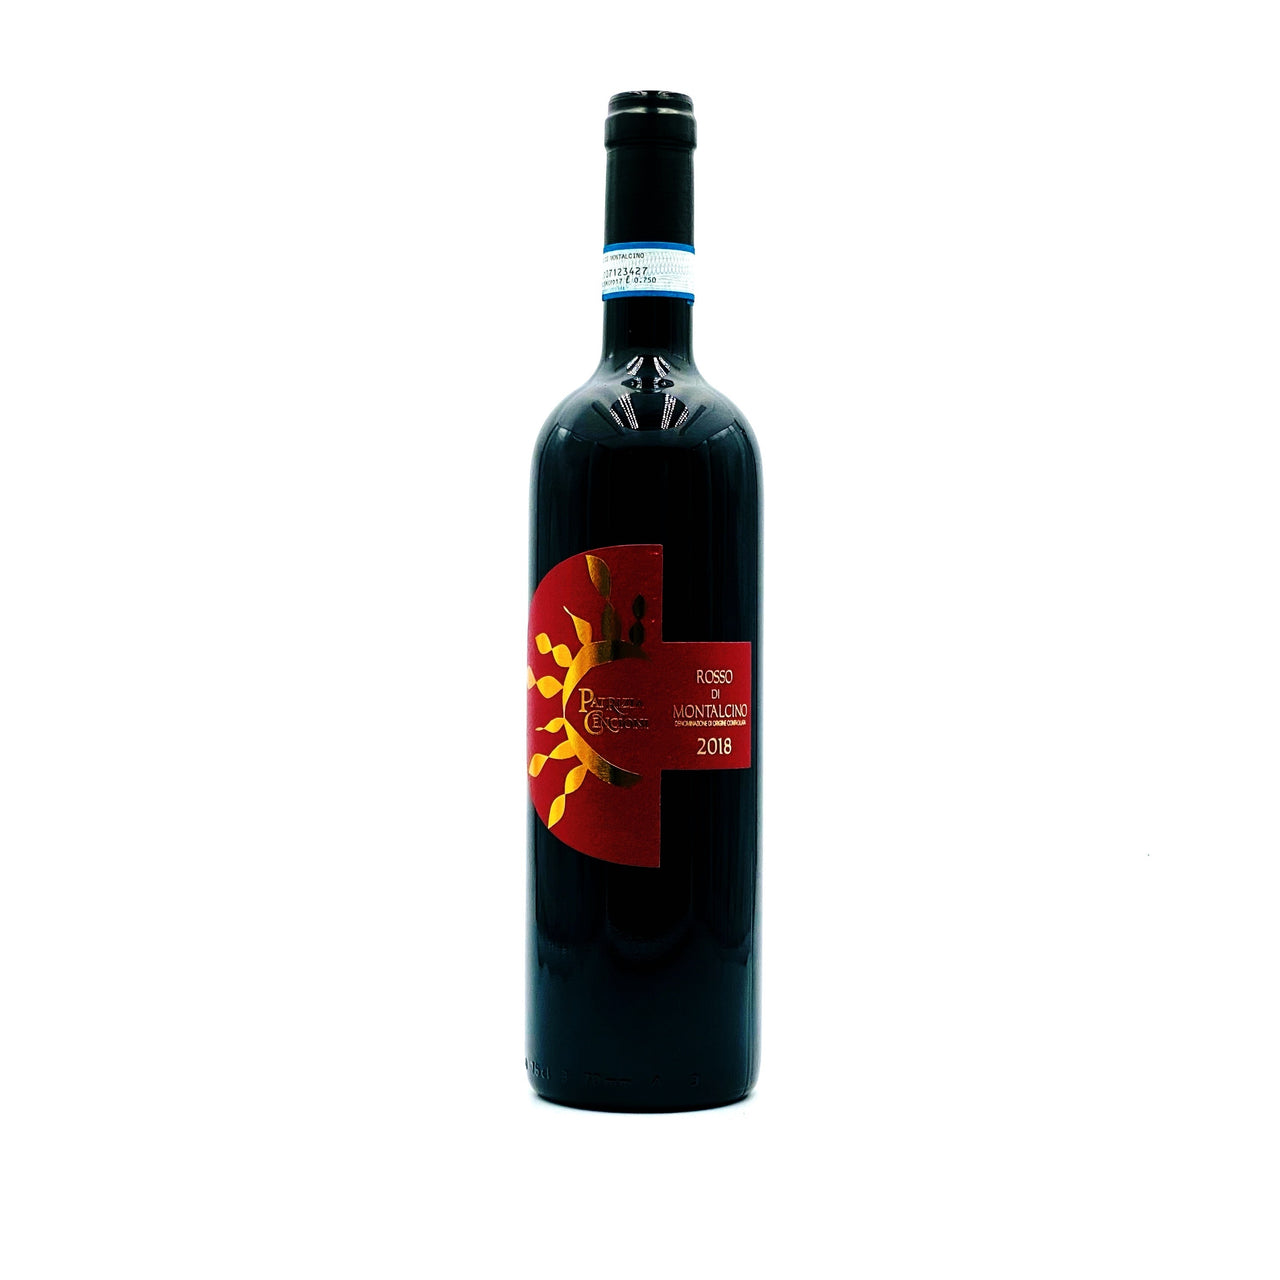 Rosso di montalcino doc Solaria - Rosato Vini